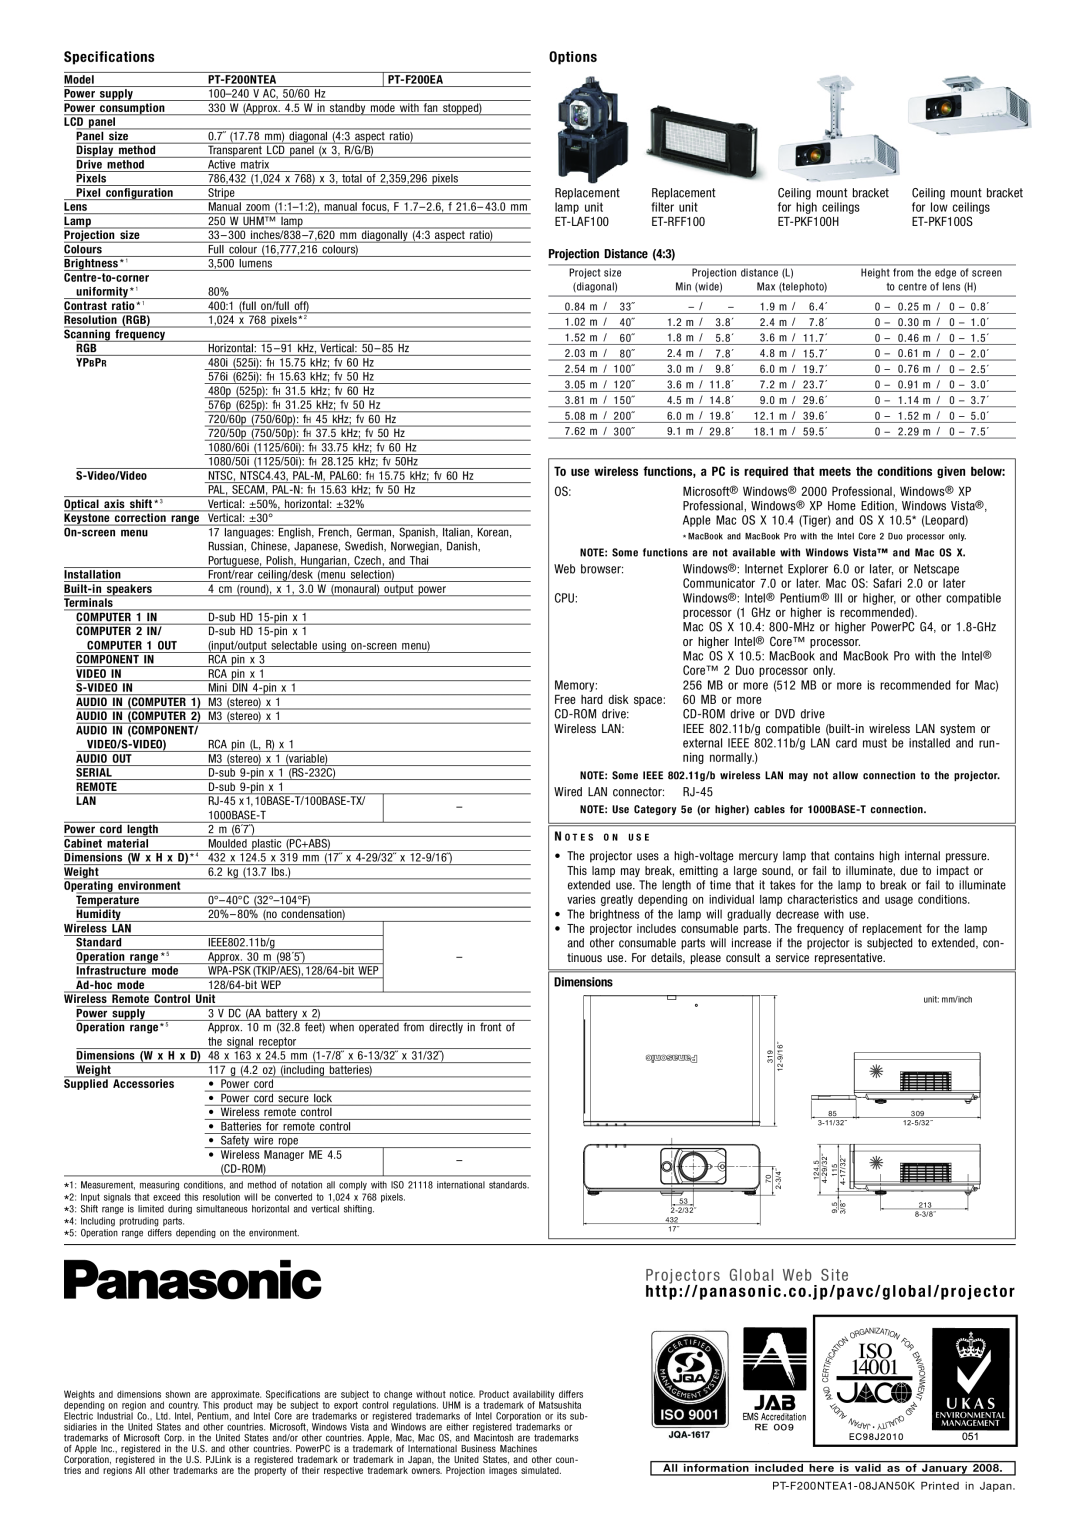 Panasonic PT-F200EA, PT-F200NTEA manual Specifications, Options, Projectors Global Web Site 